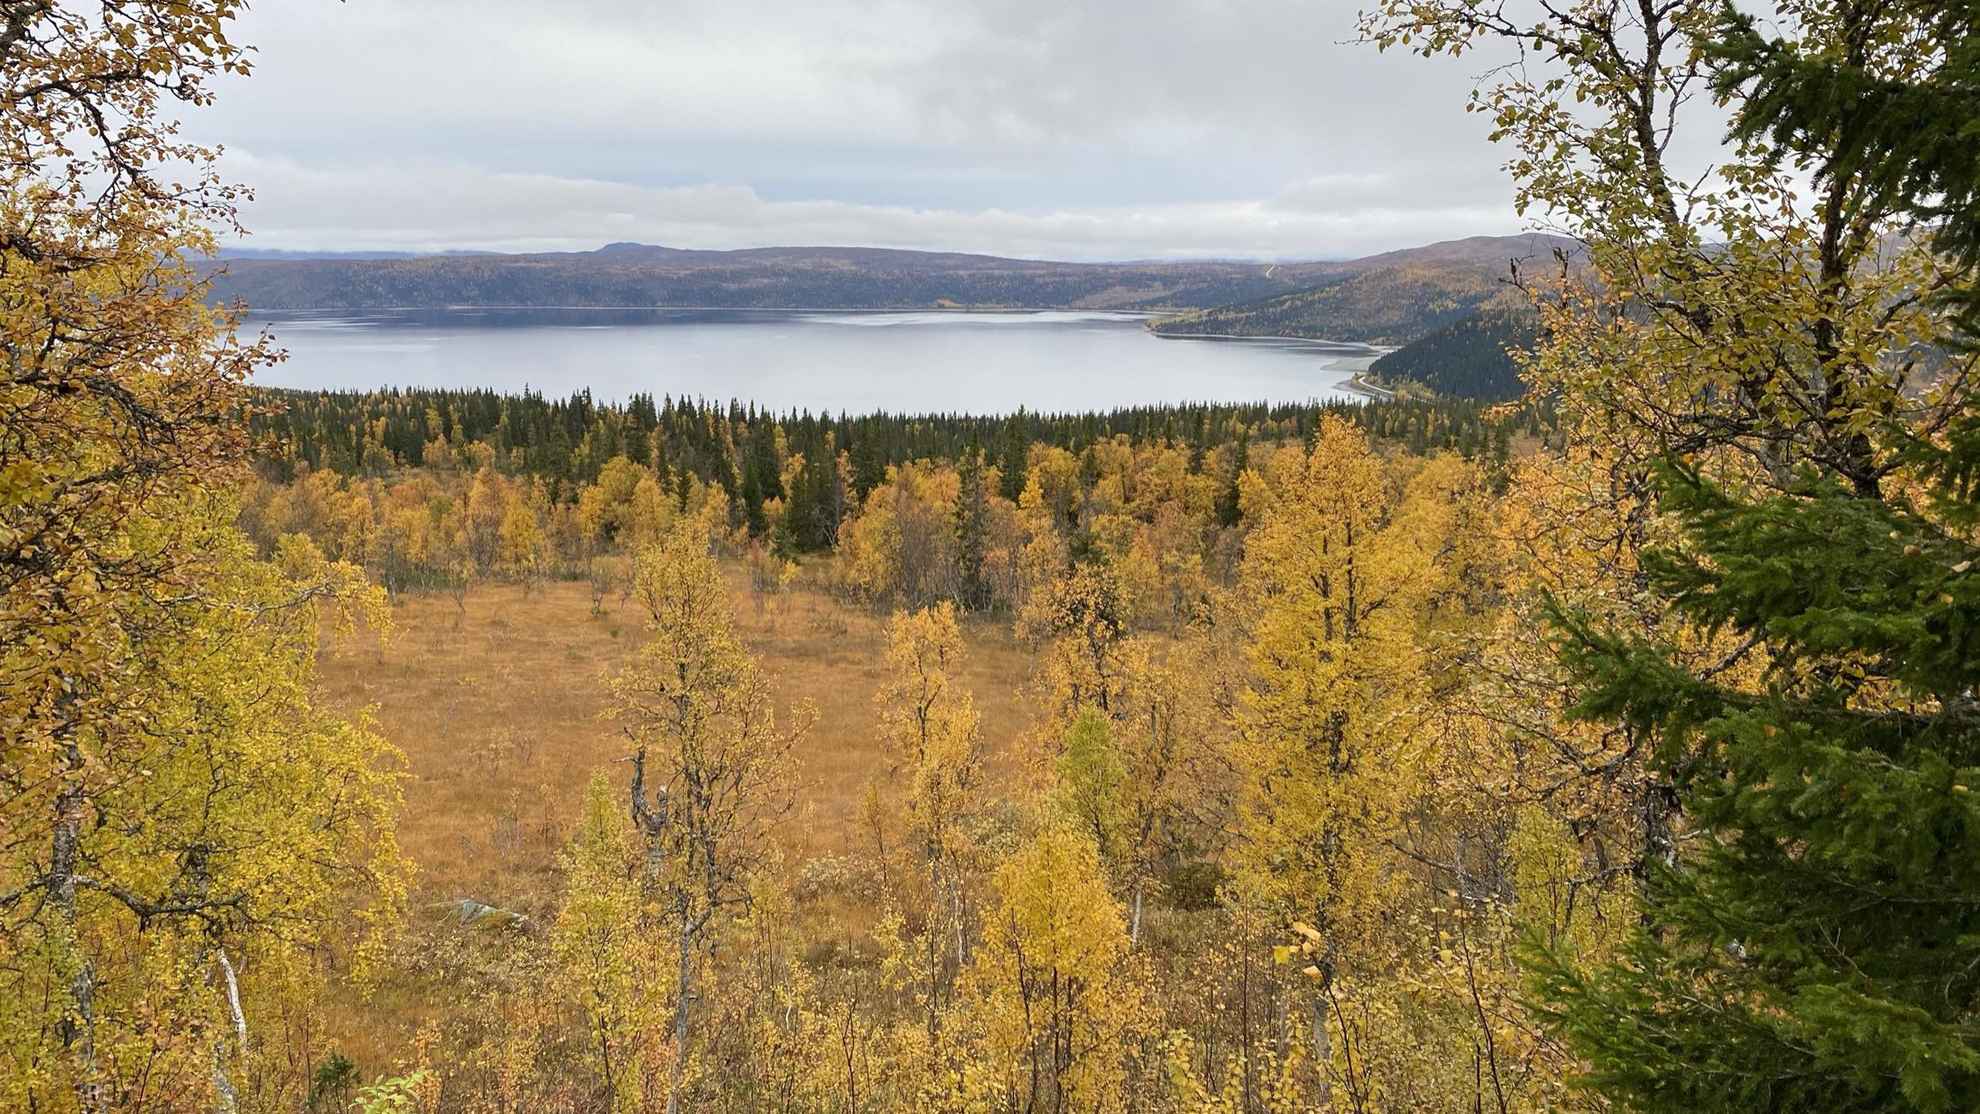 Der See Stora Blåsjön ist von Bergen und Wäldern umgeben. Die Bäume sind in den Farben des Herbstes gefärbt.